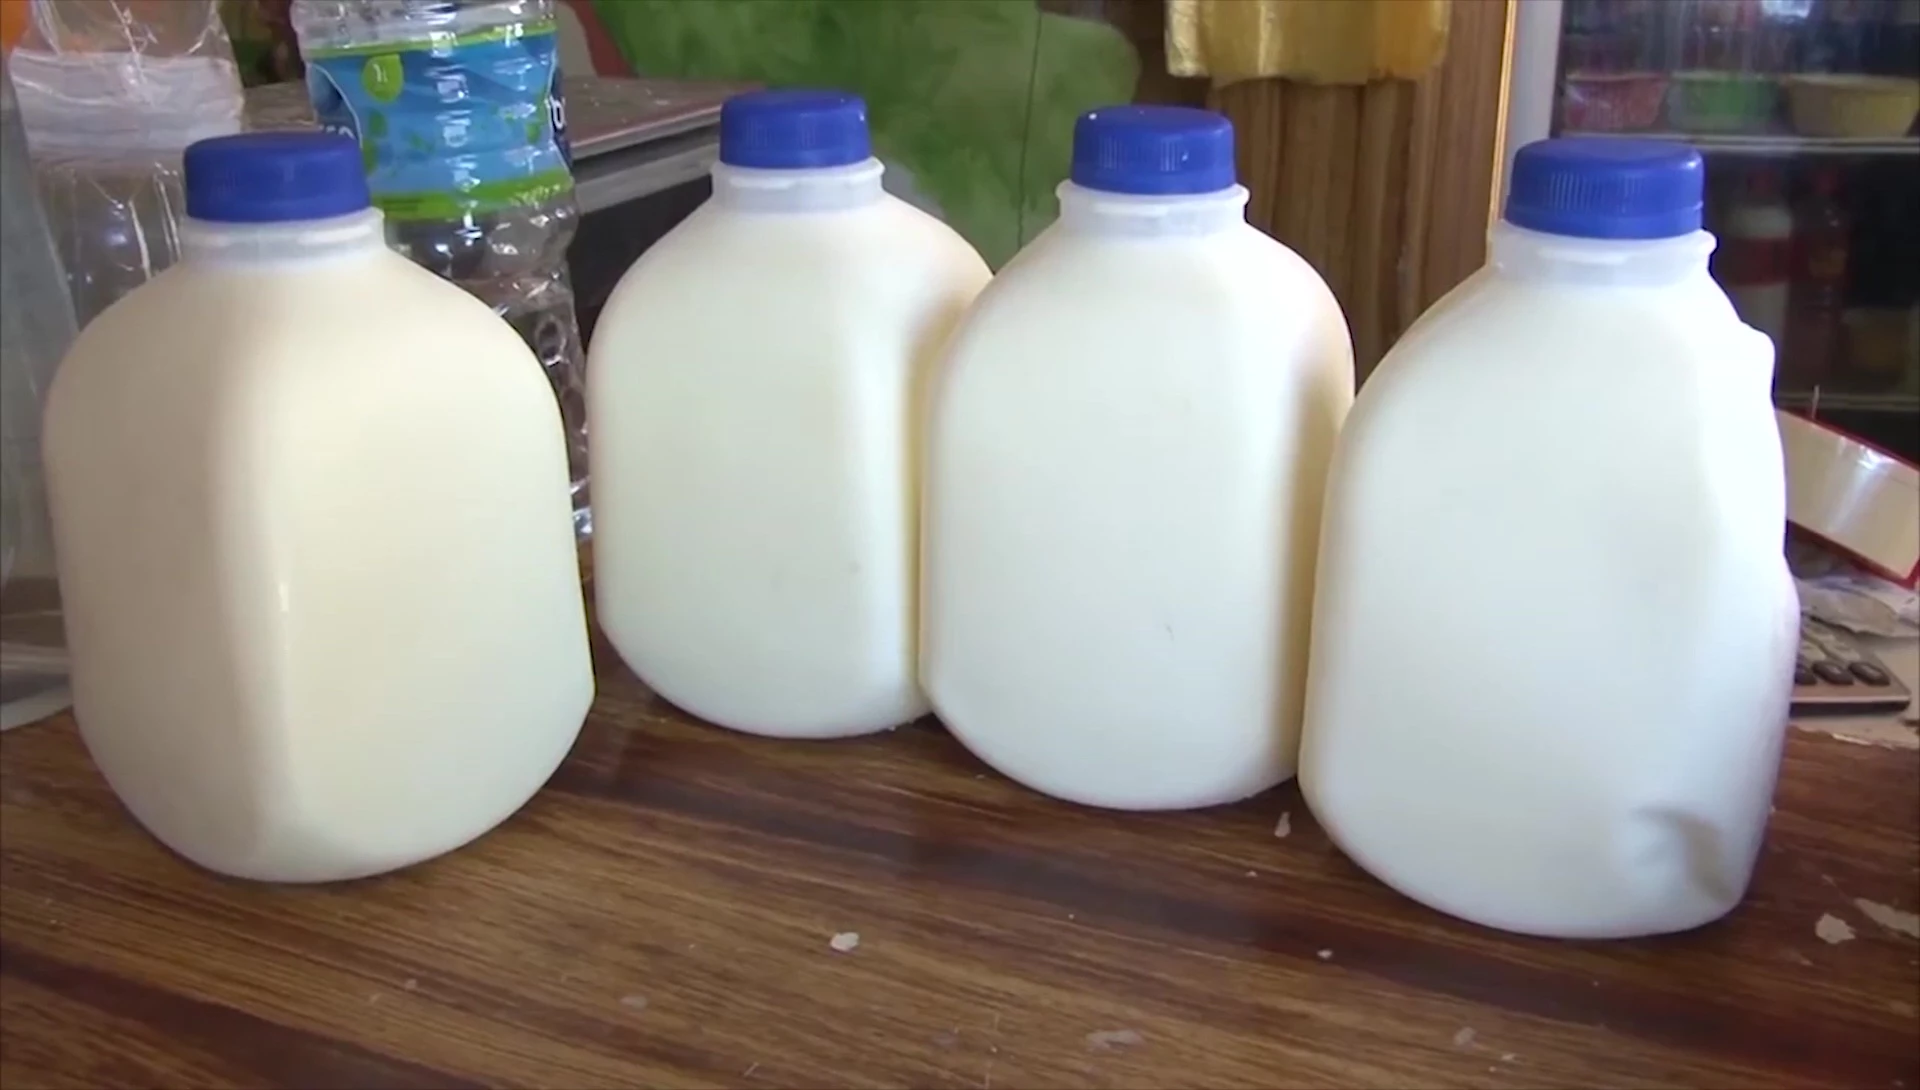 Ganaderos de Mazatlán piden aumento al precio de compra de la leche